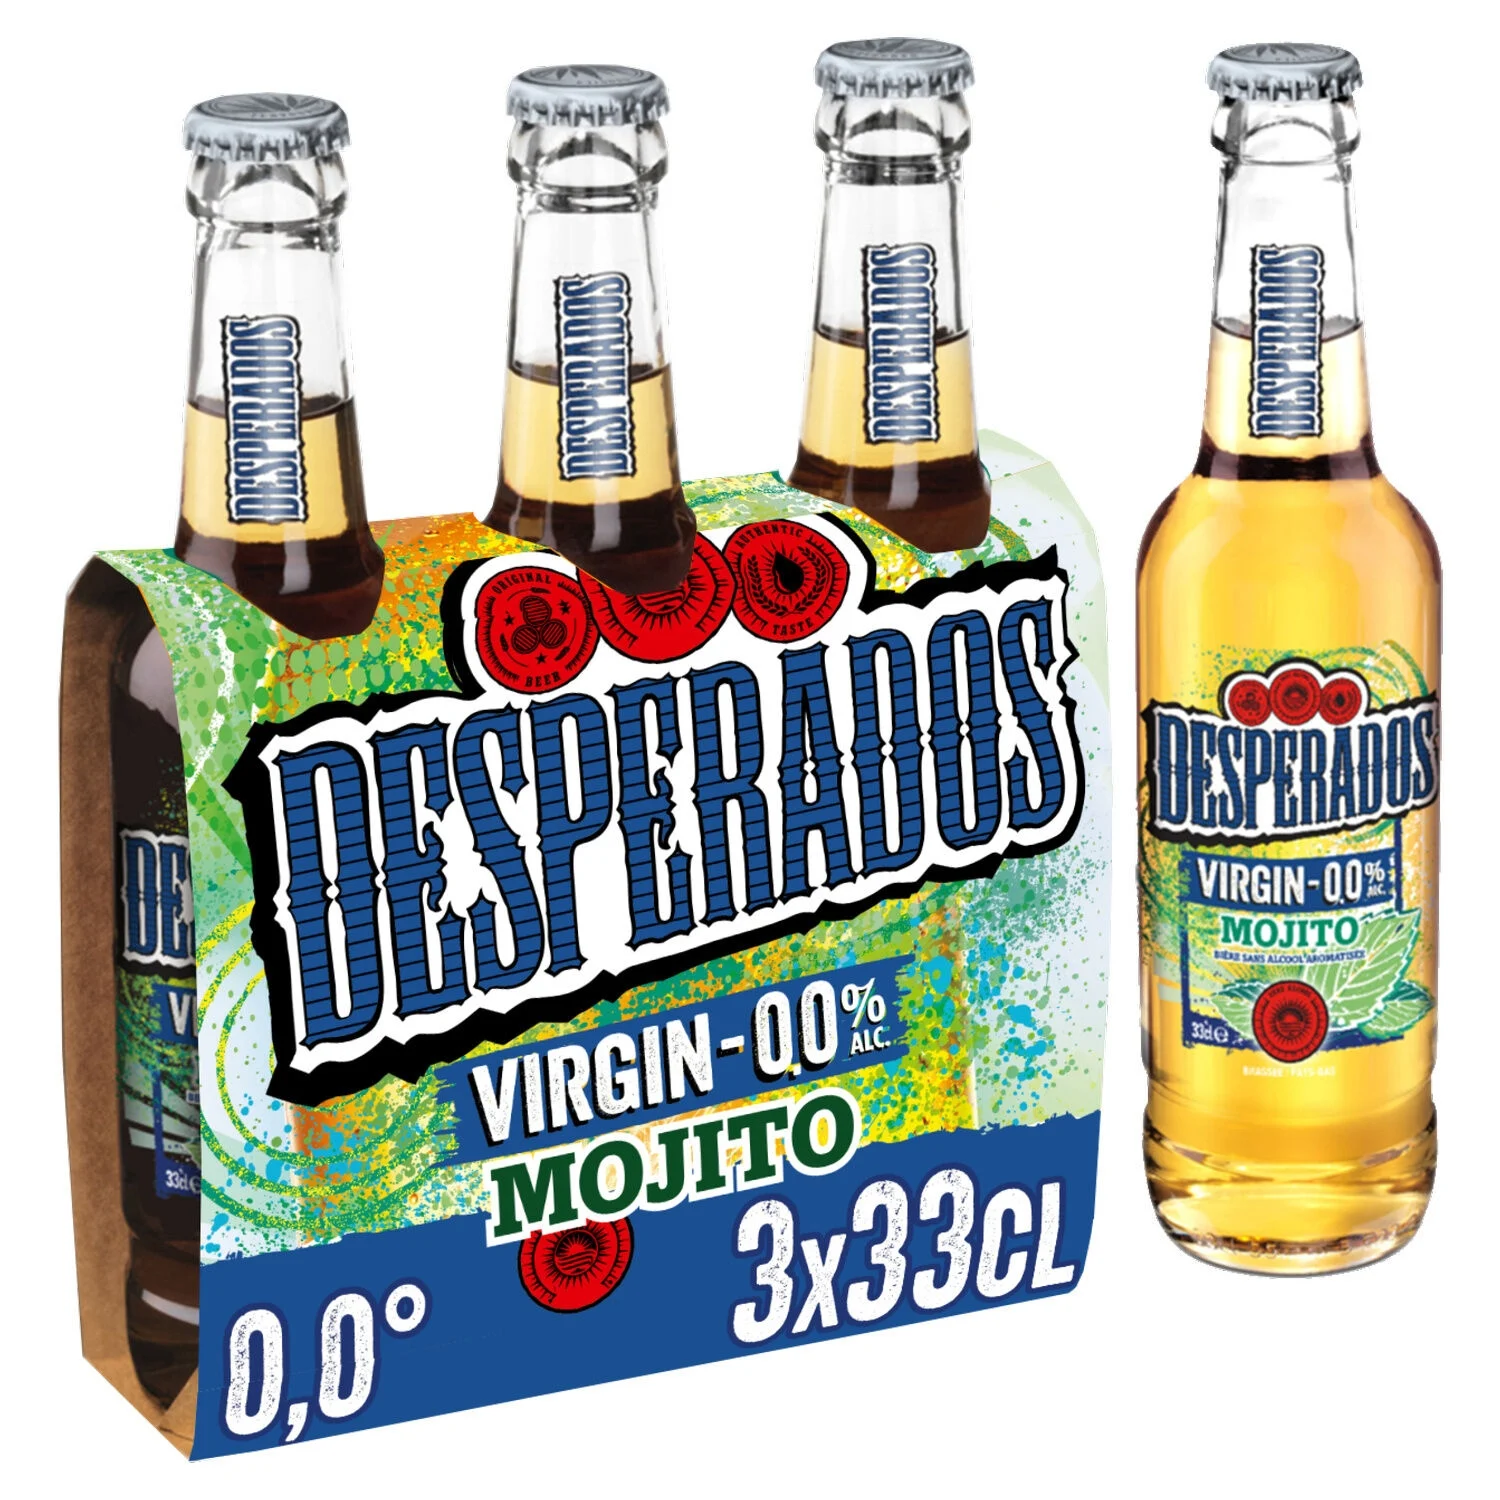 无酒精啤酒莫吉托味，3x33cl - DESPERADOS